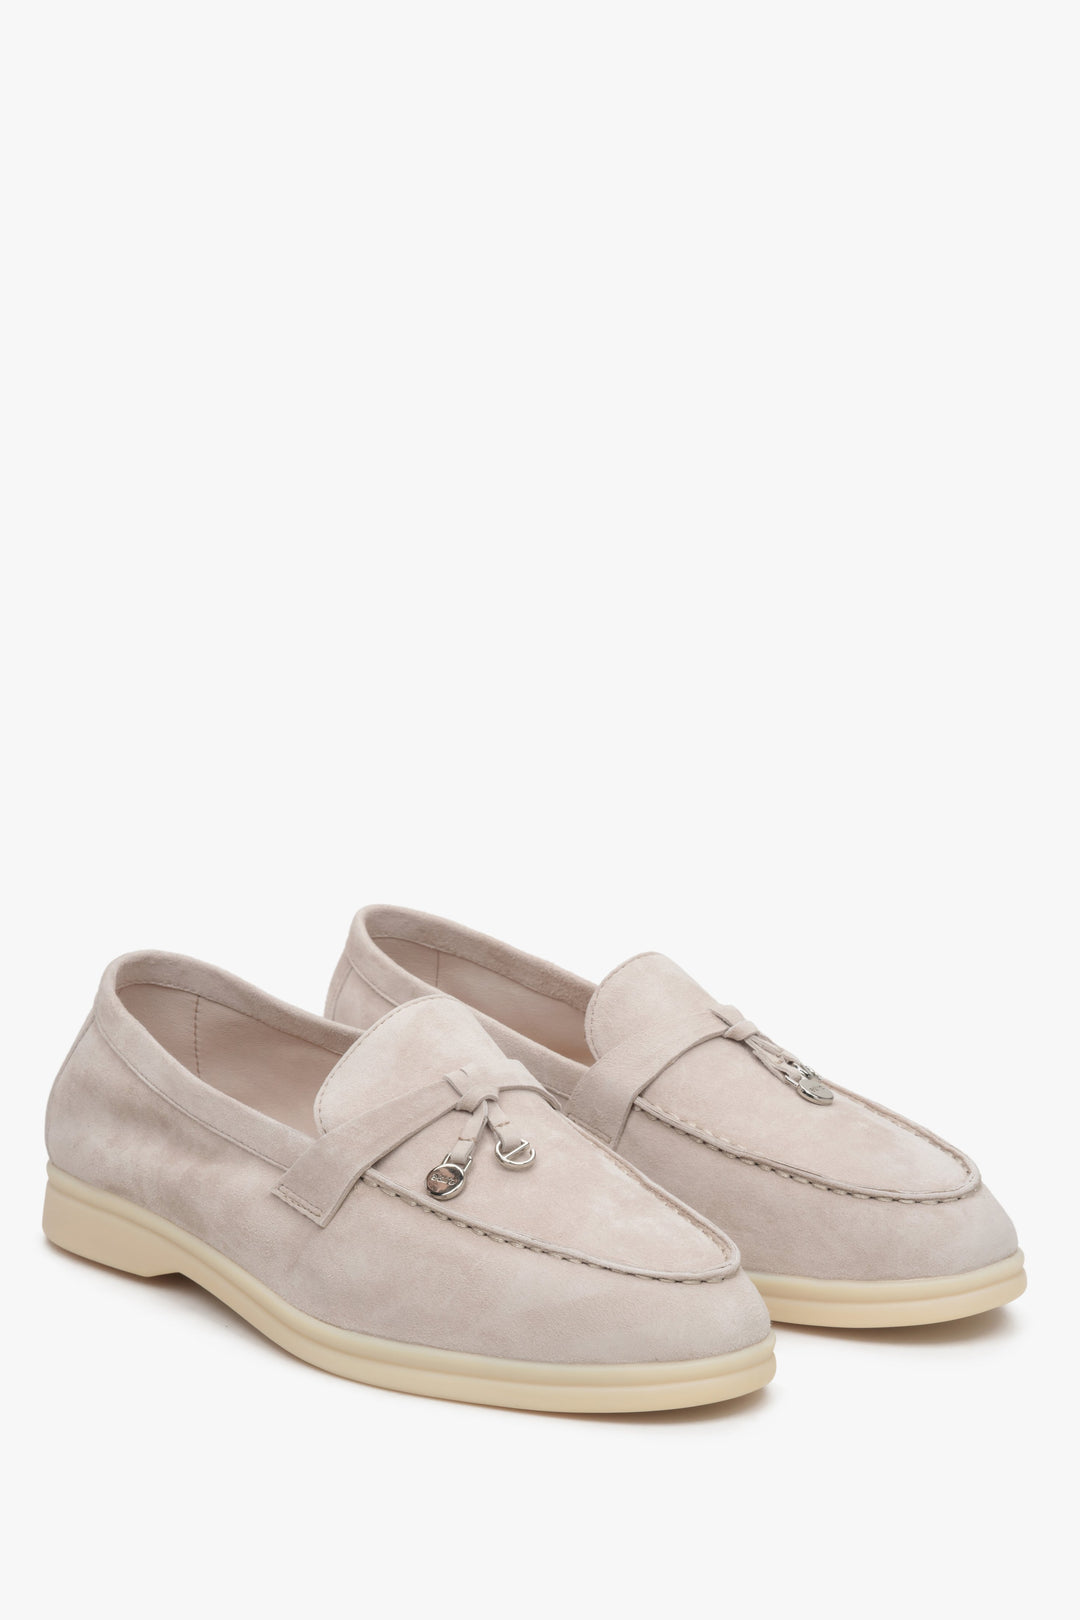 Light beige velour women's slip on loafers,